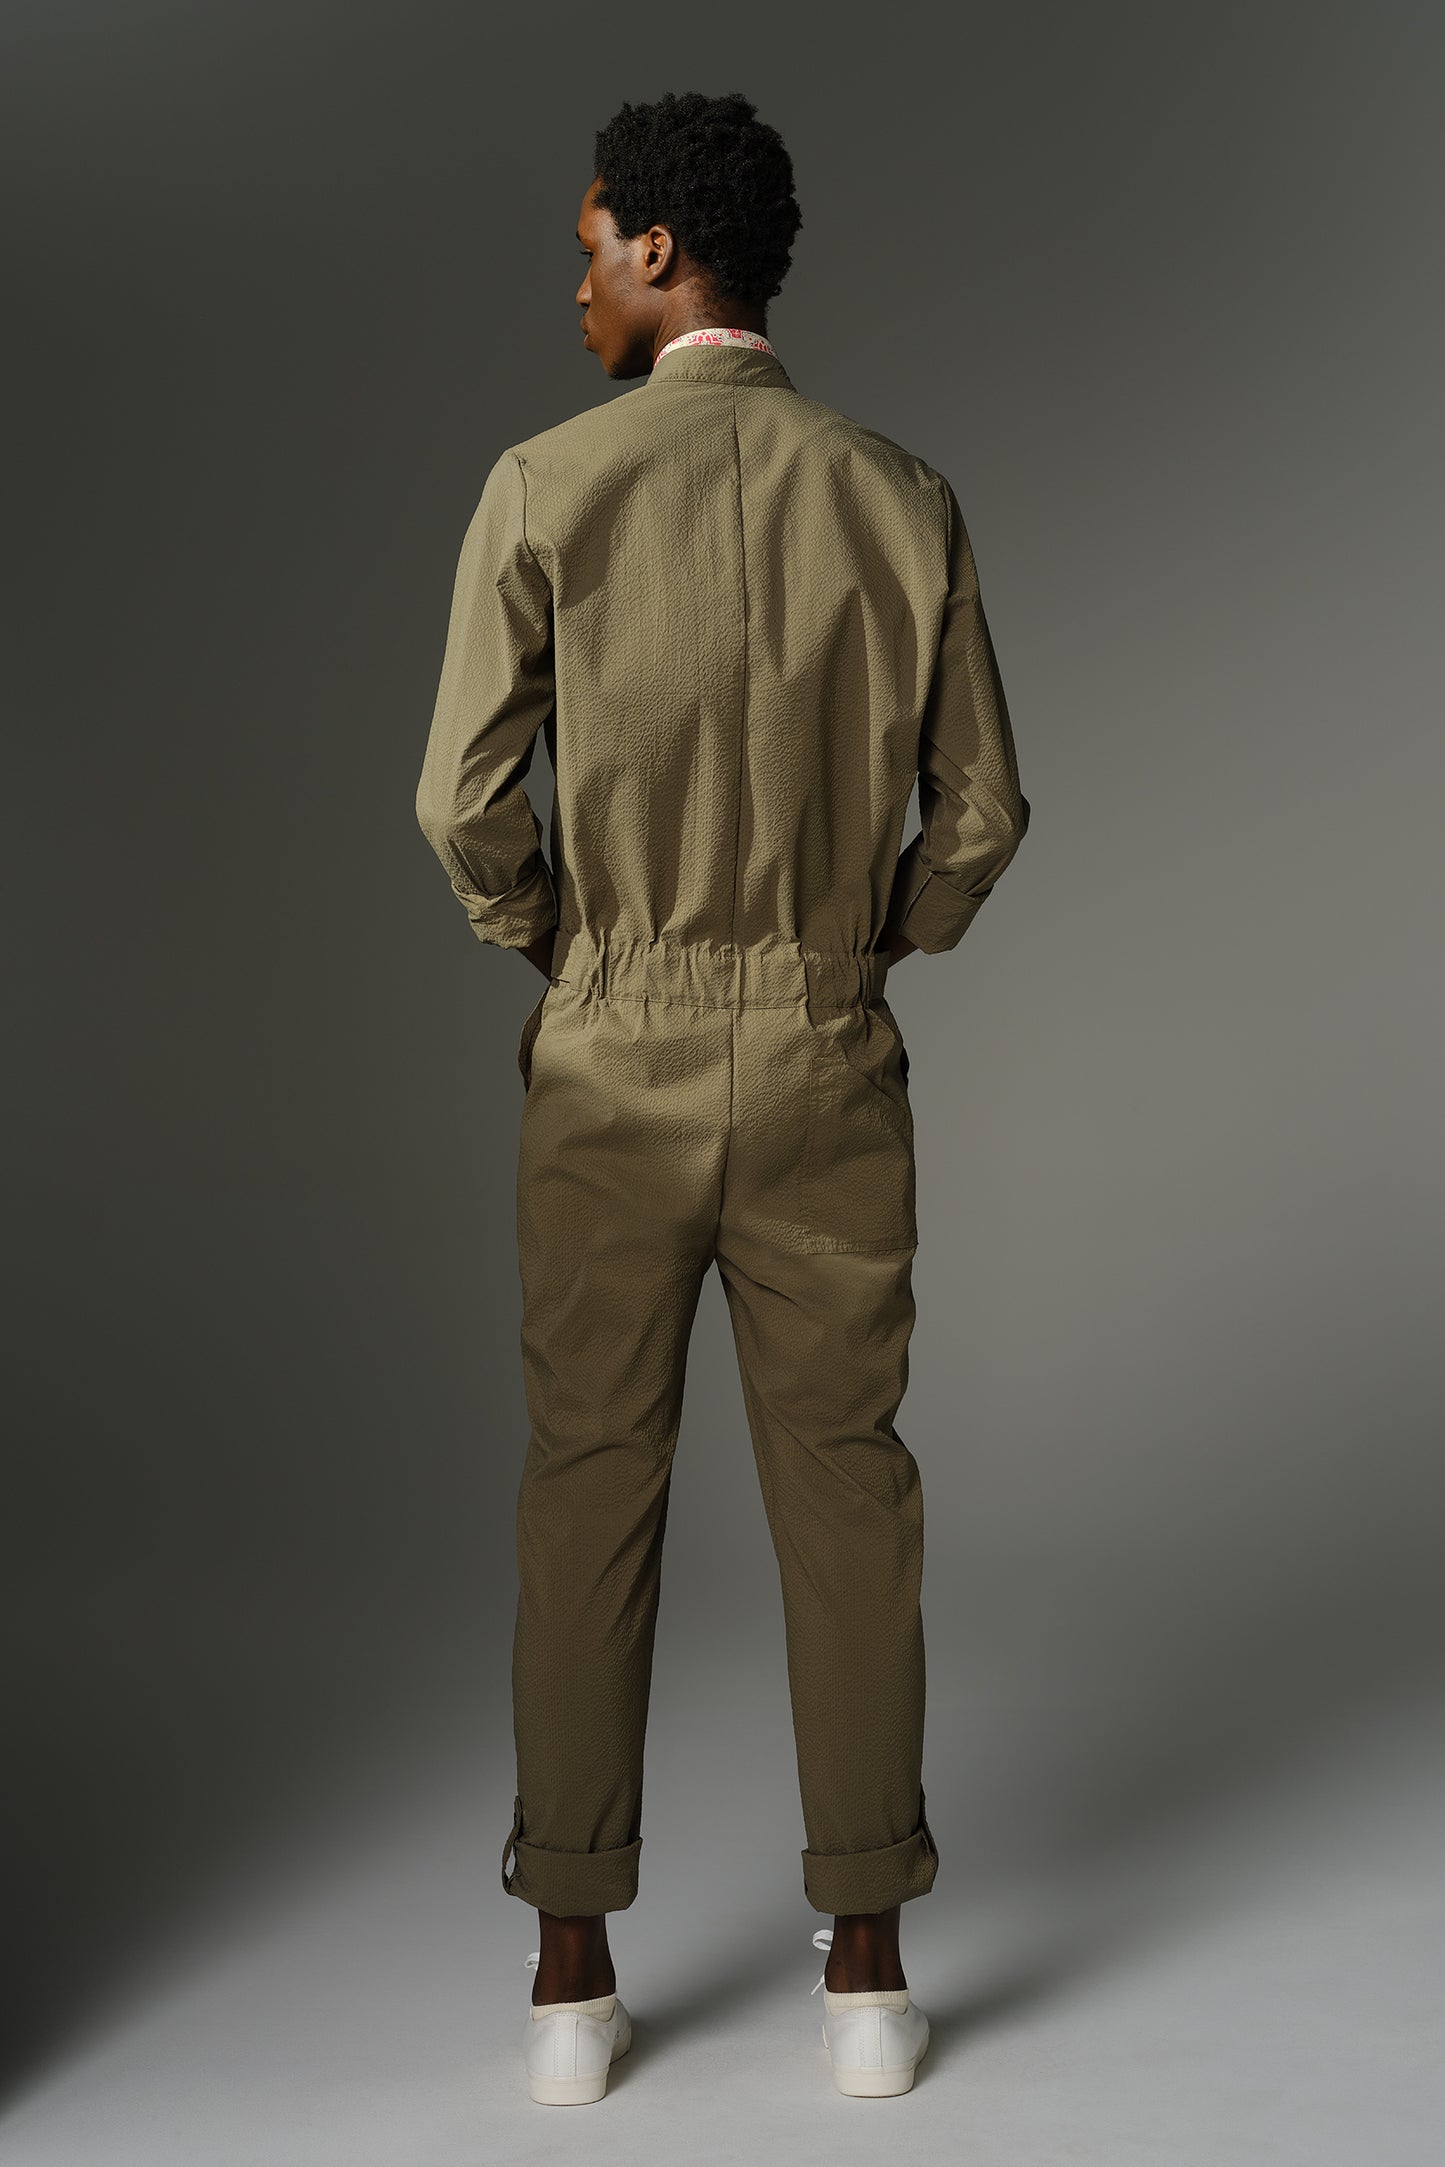 THE WILDE Jumpsuit - Long Sleeve in Olive Japanese Seersucker